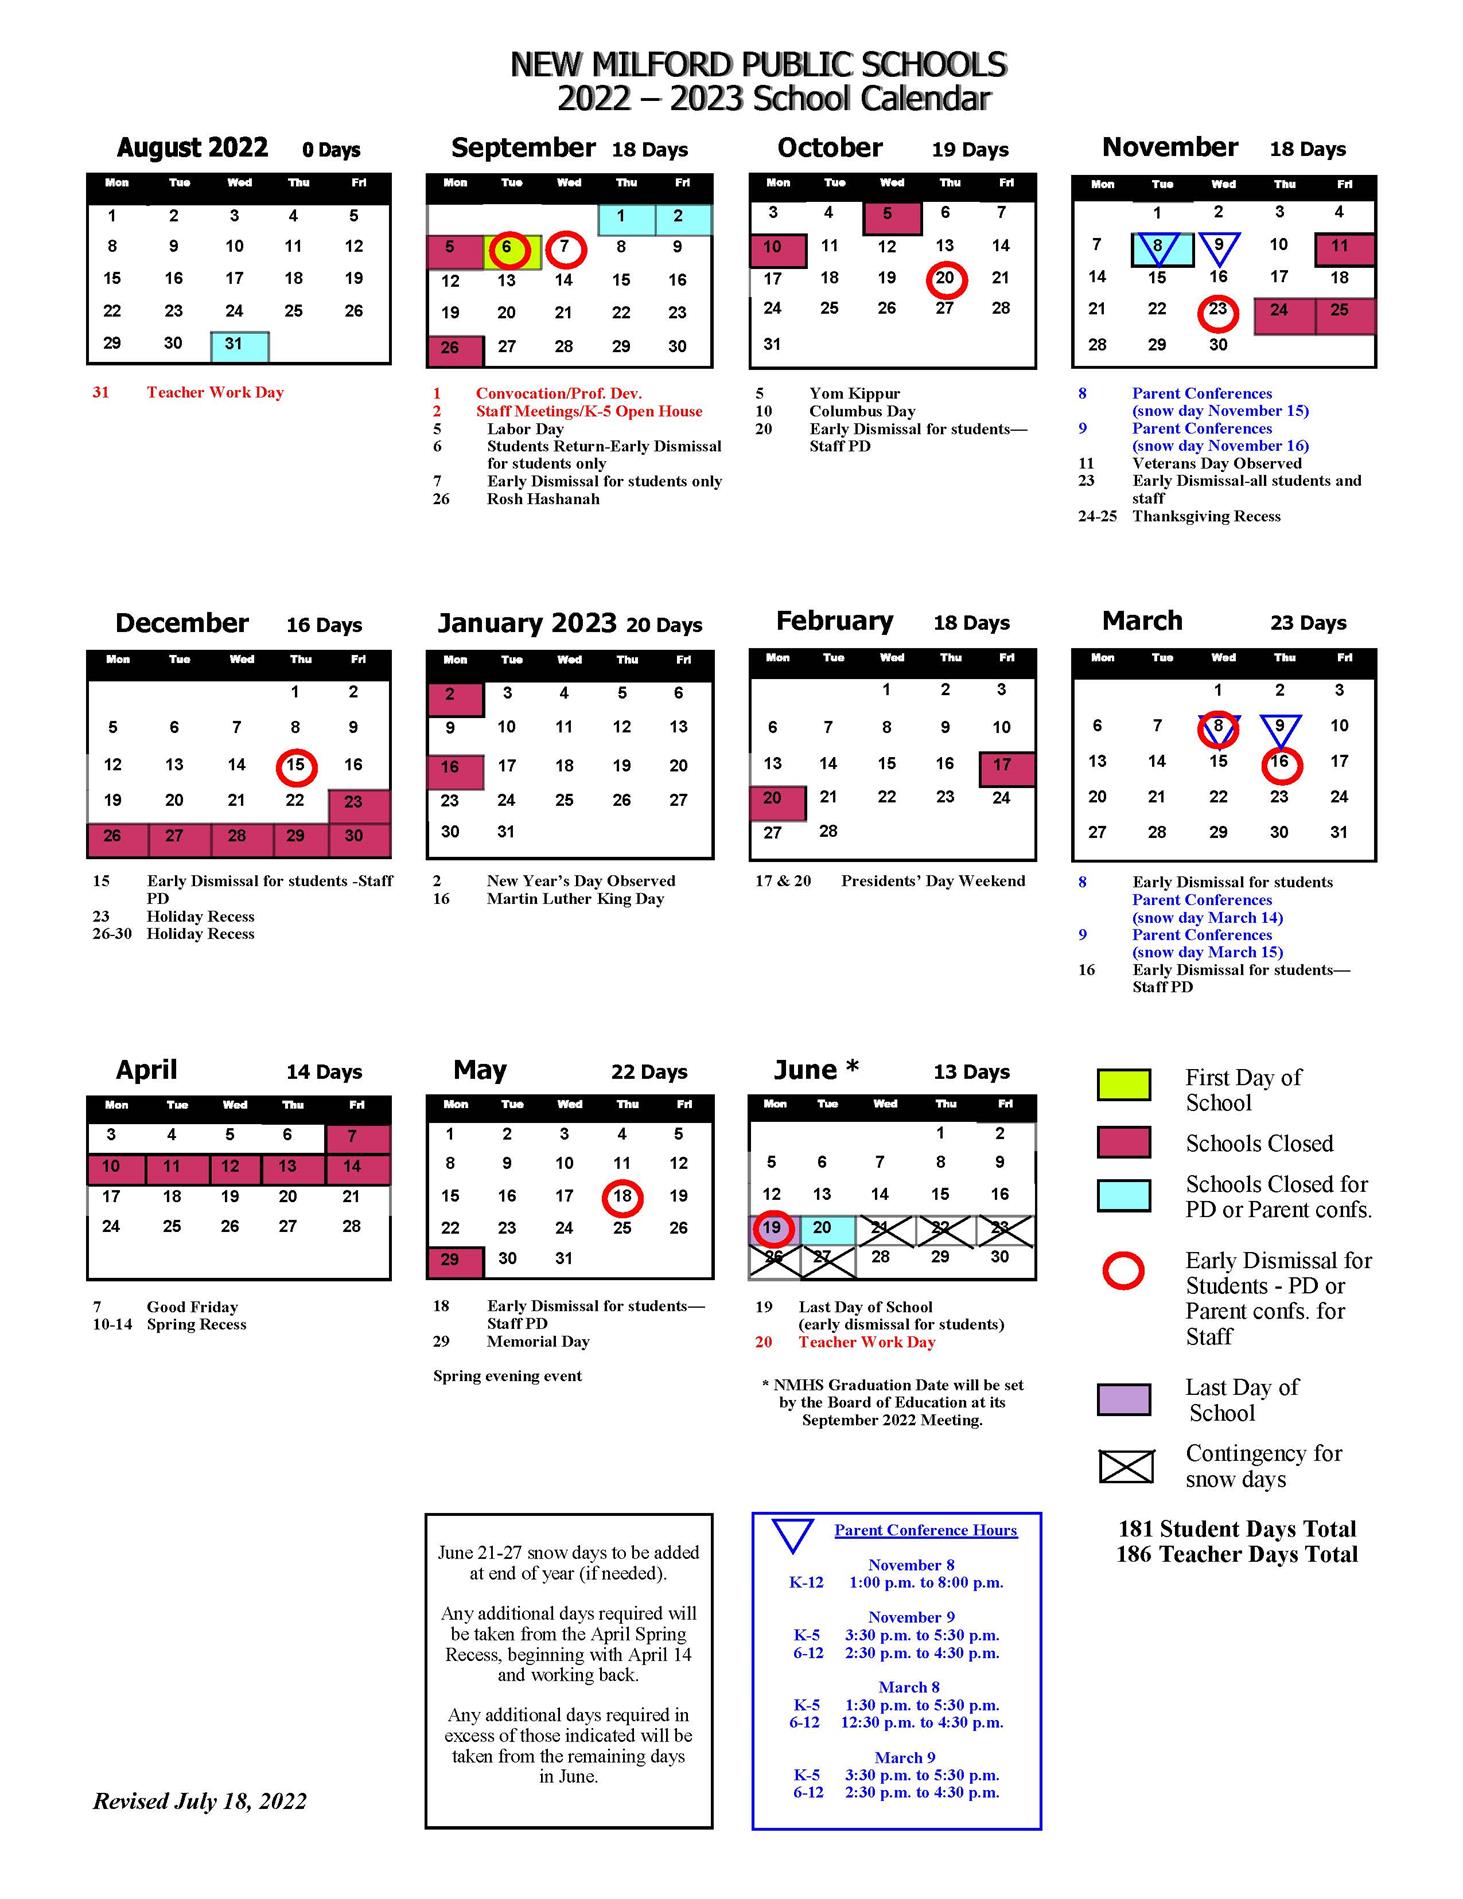 22-23 district calendar revised July 18, 2022